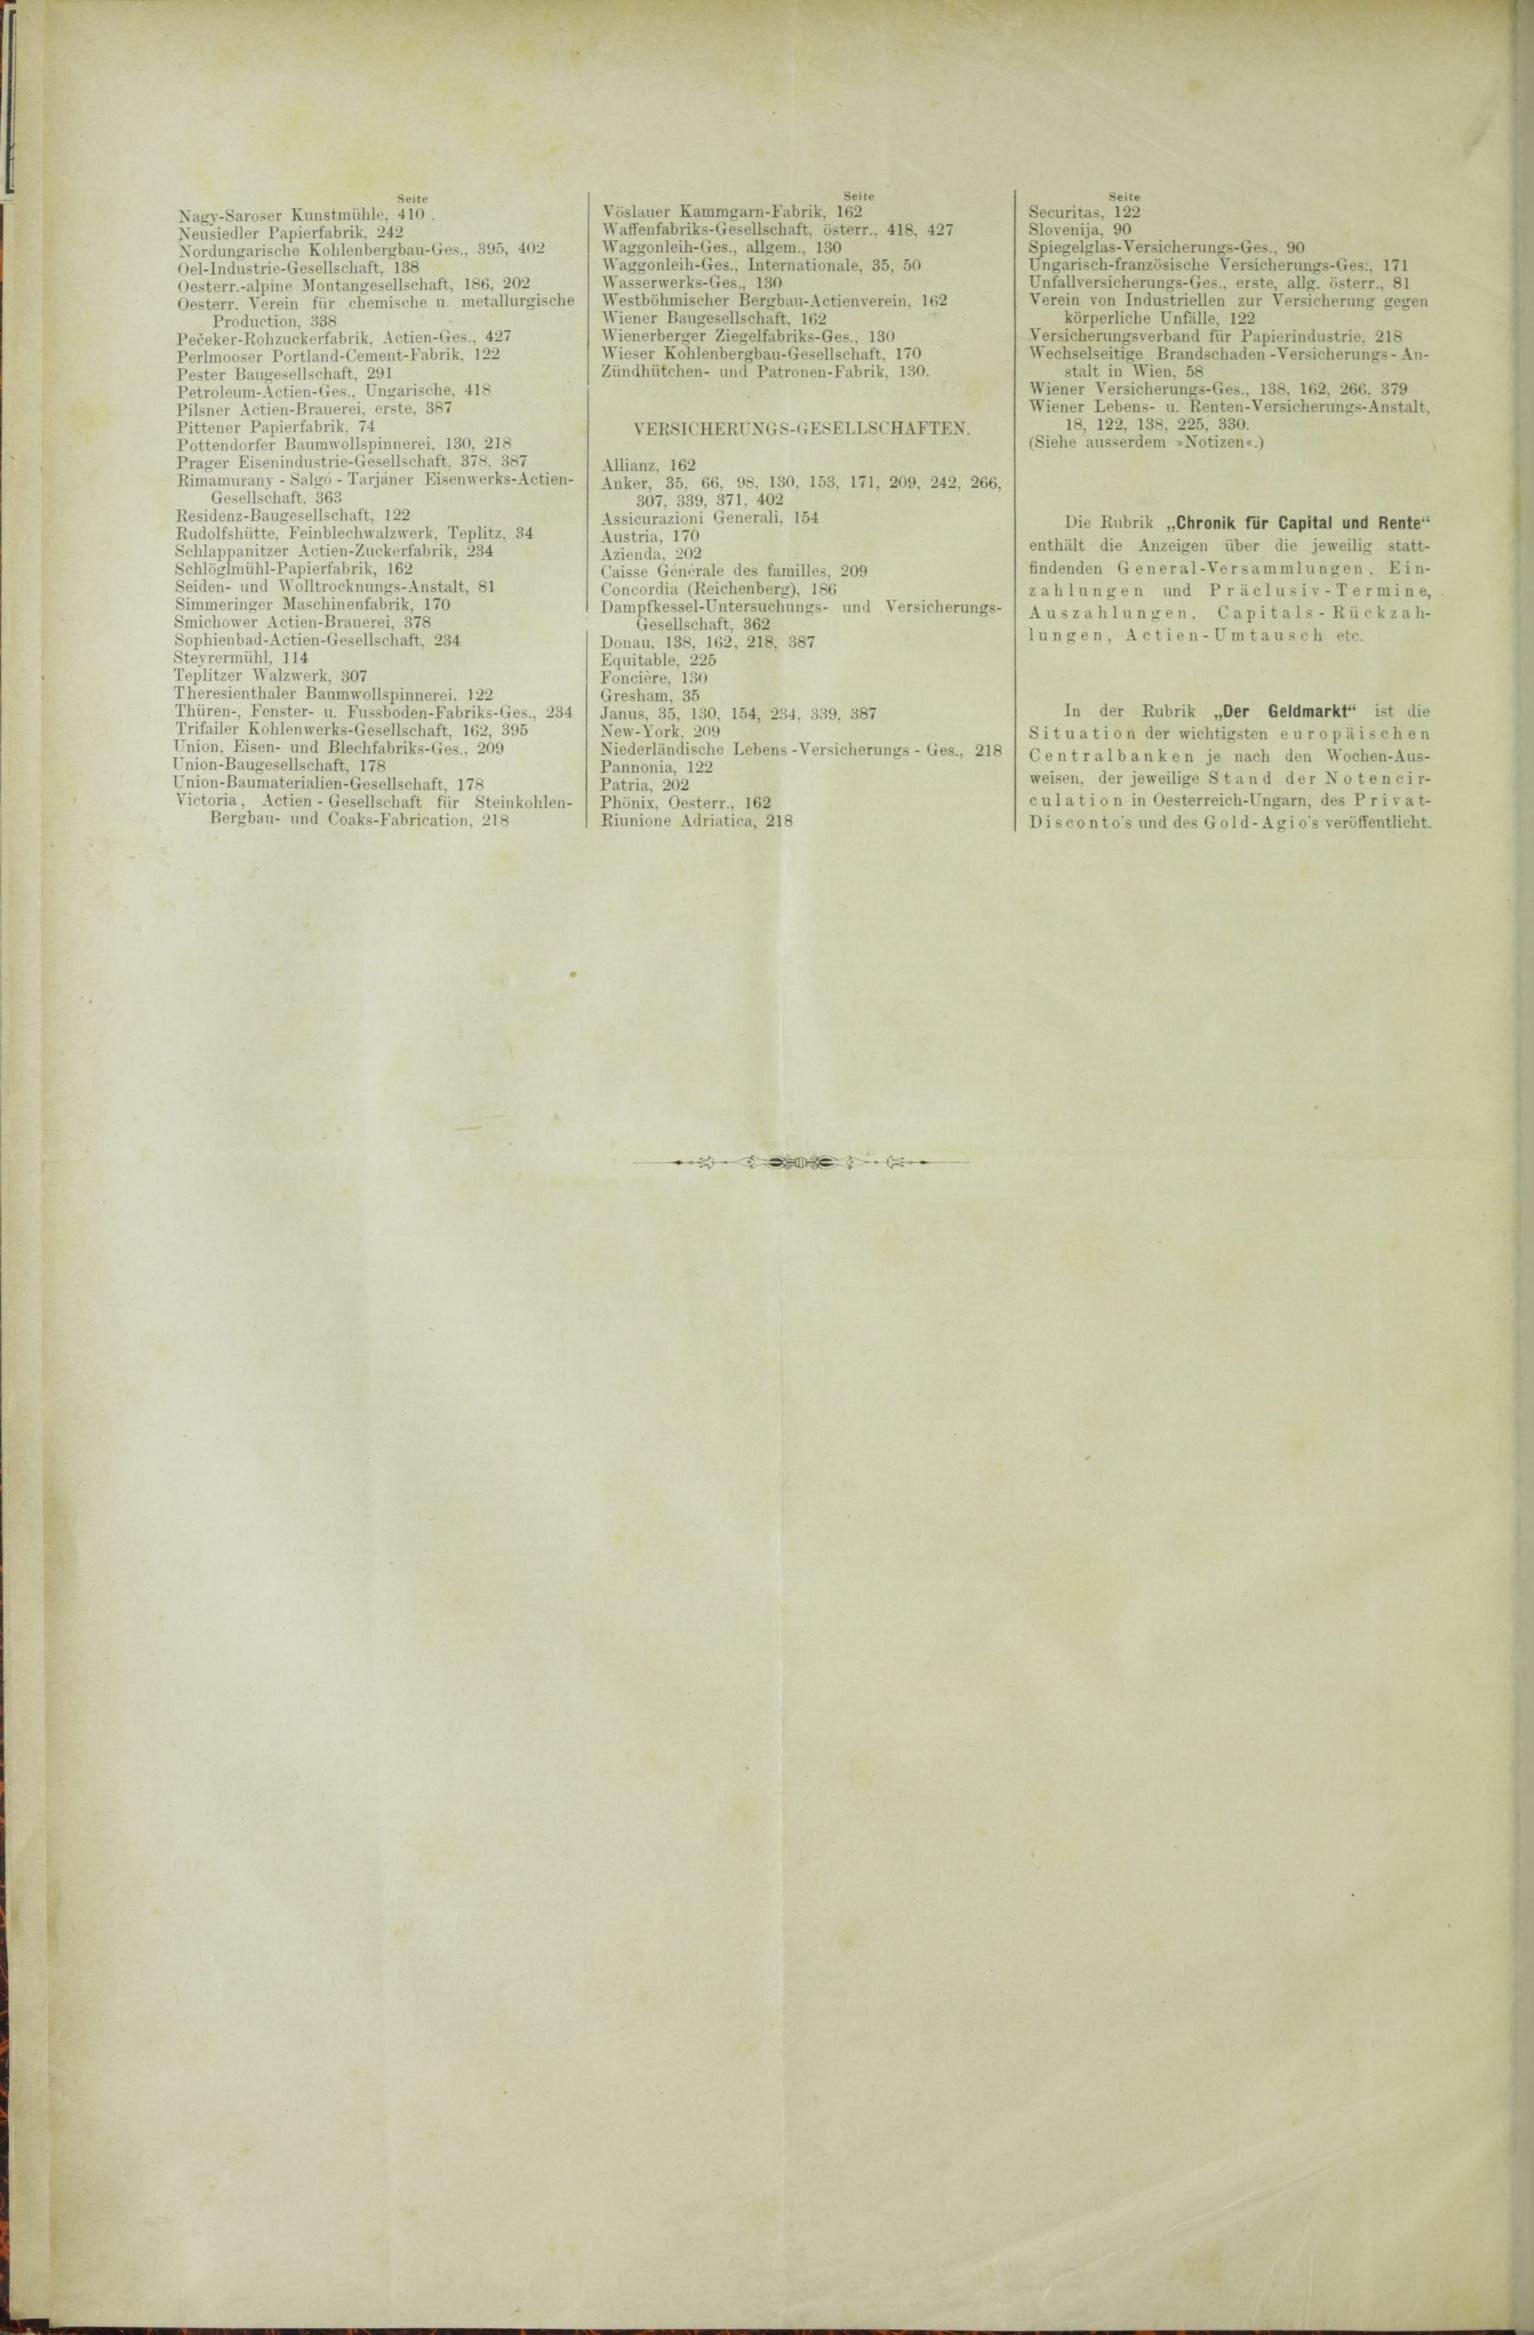 Der Tresor 17.12.1885 - Seite 12